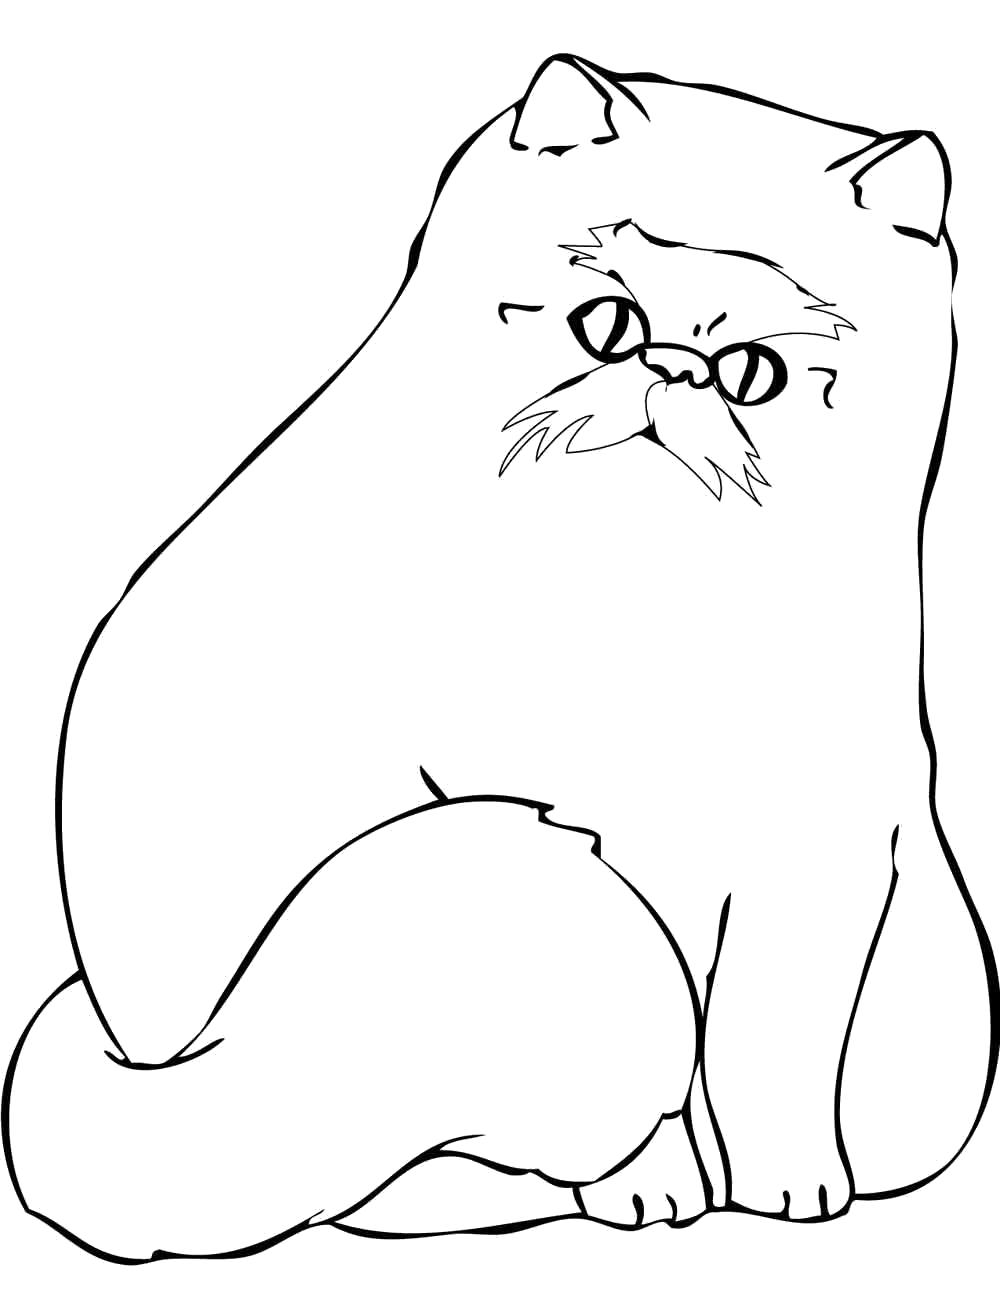 Раскраска персидская кошка. Домашние животные